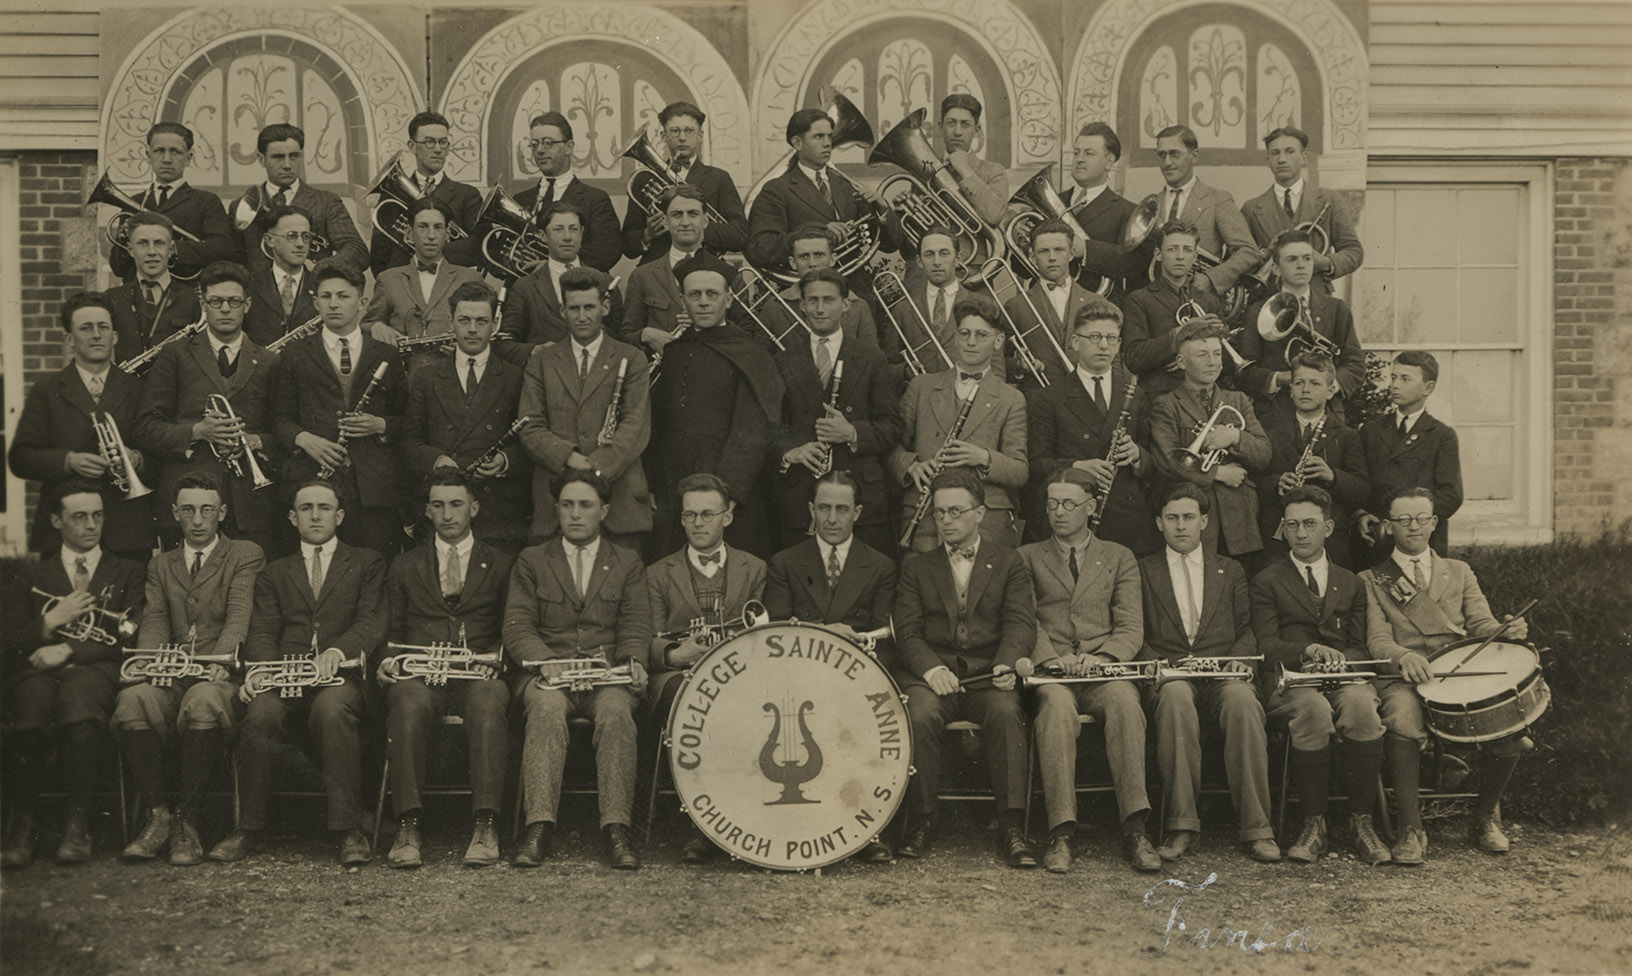 communityalbums - The brass band, Collège Sainte-Anne, Church Point, NS